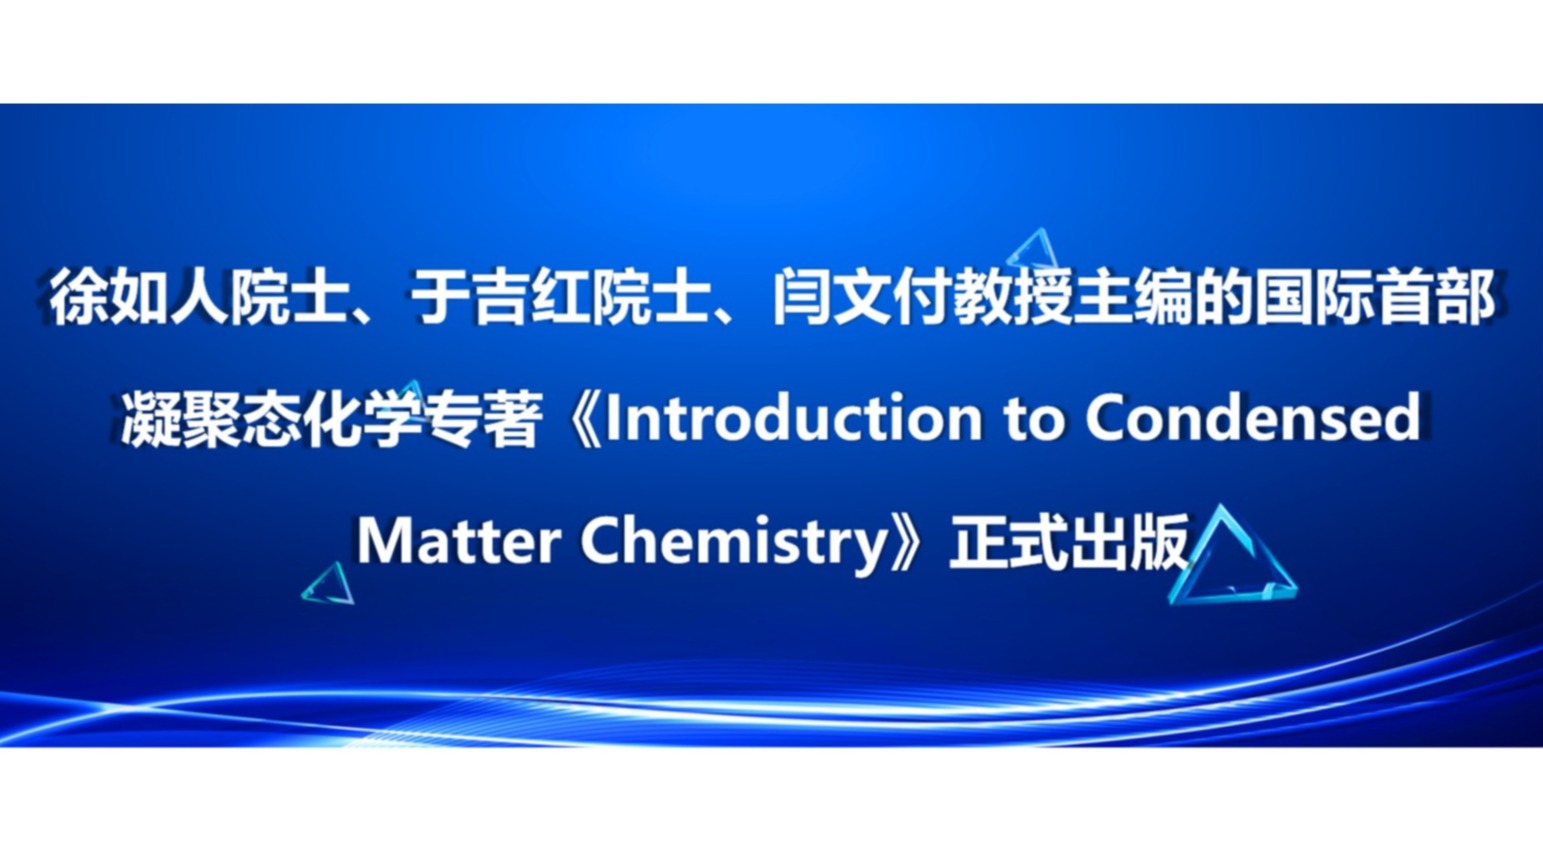 徐如人院士、于吉红院士、闫文付教授主编的国际首部凝聚态化学专著《Introduction to Condensed Matter Chemistry》正式出版